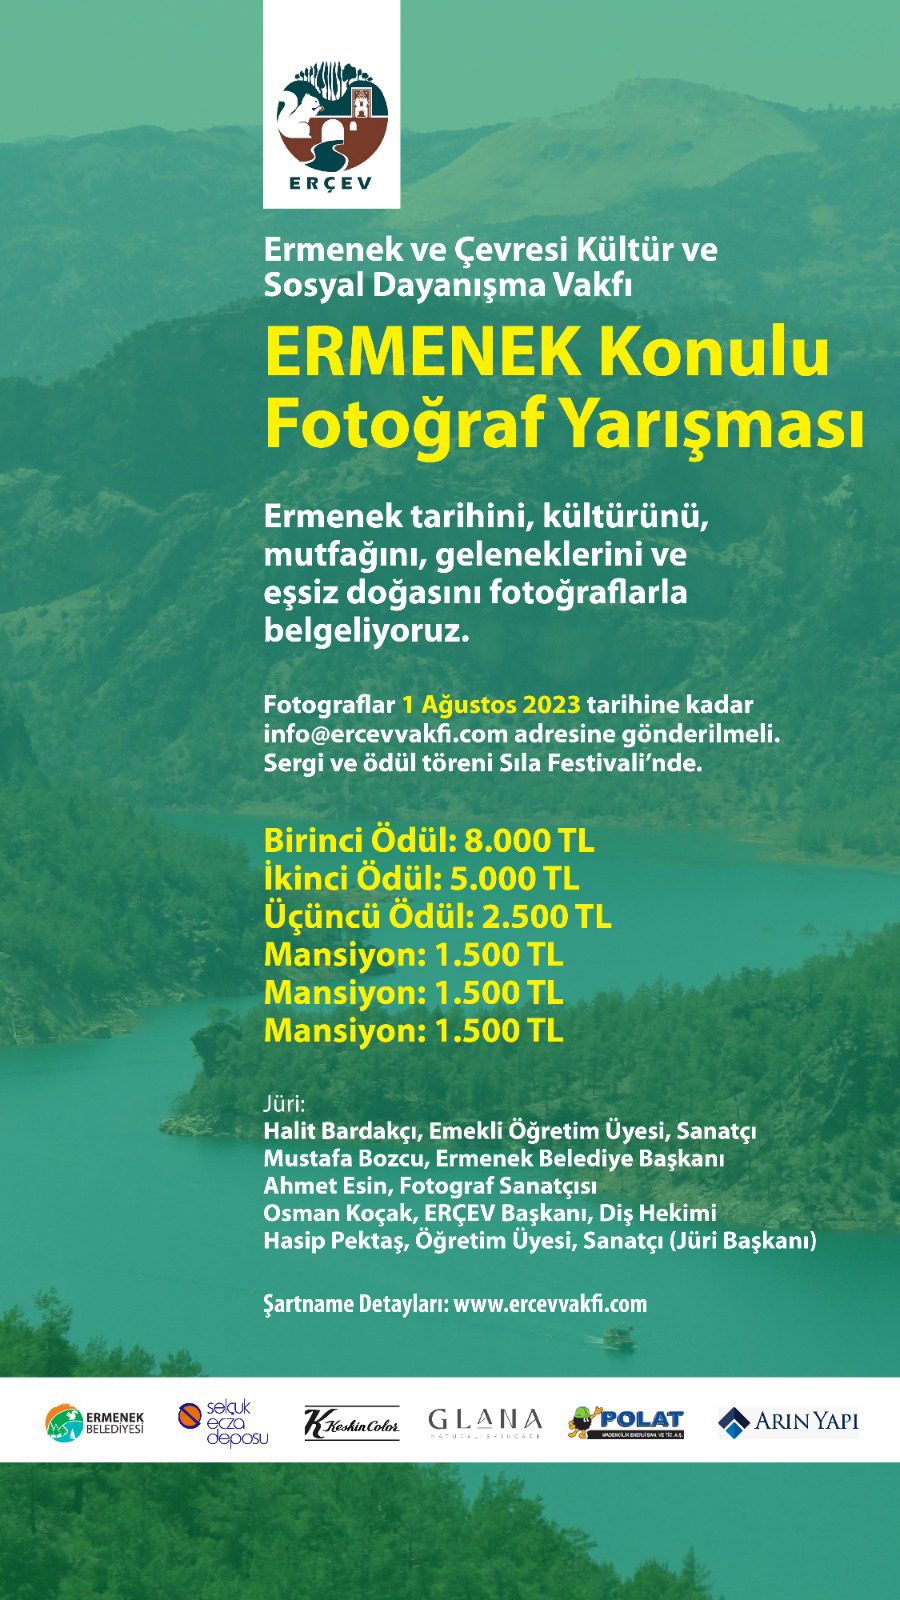 ERÇEV Ermenek konulu bir fotoğraf yarışması düzenliyor!